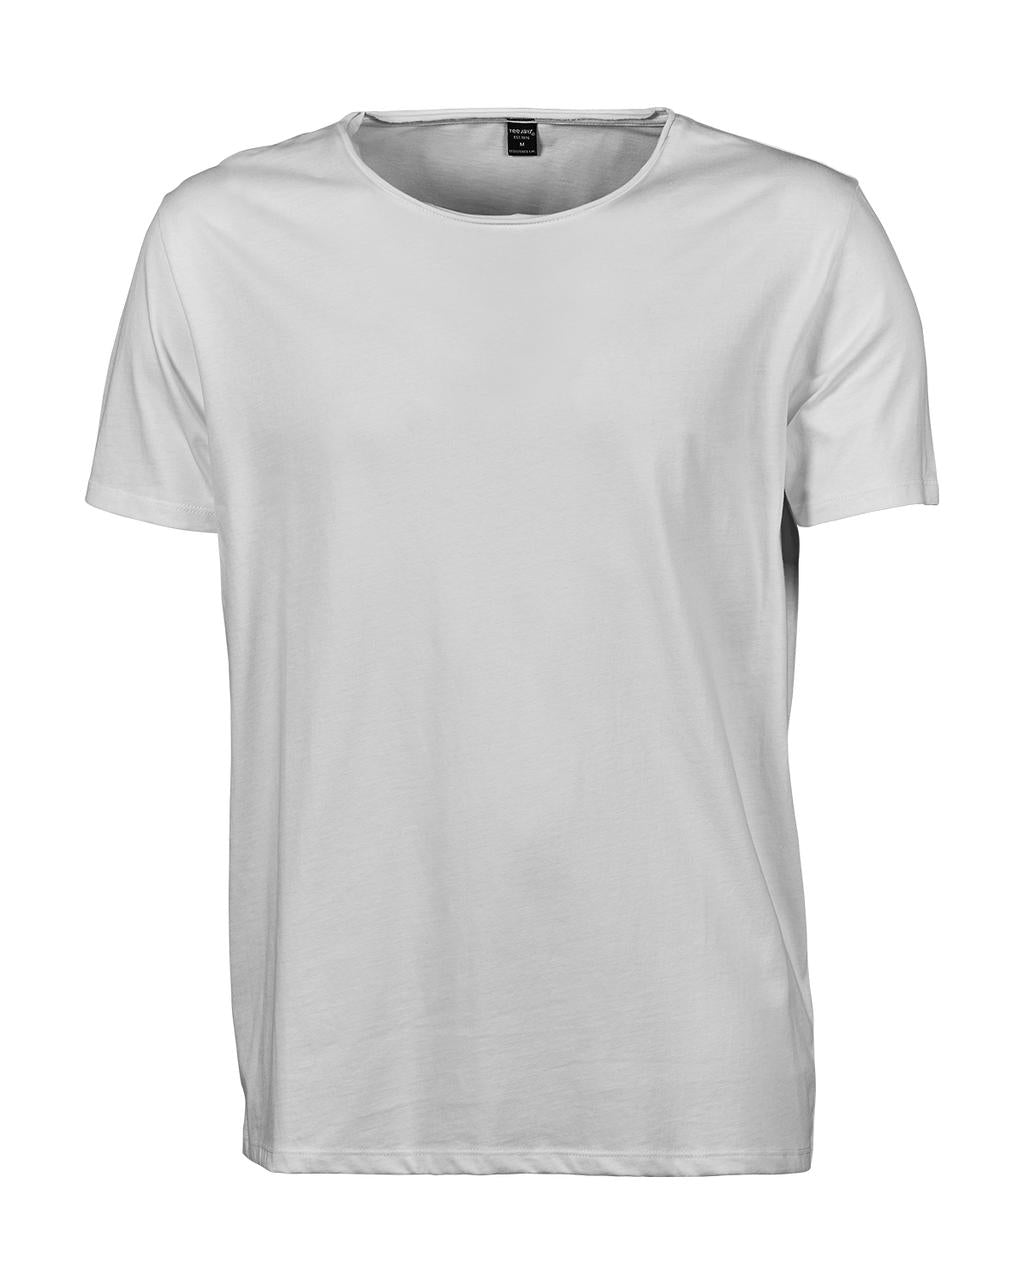 Tee Jays Herren T-Shirt Basic Rundhalsausschnitt Shirt Baumwolle Weich